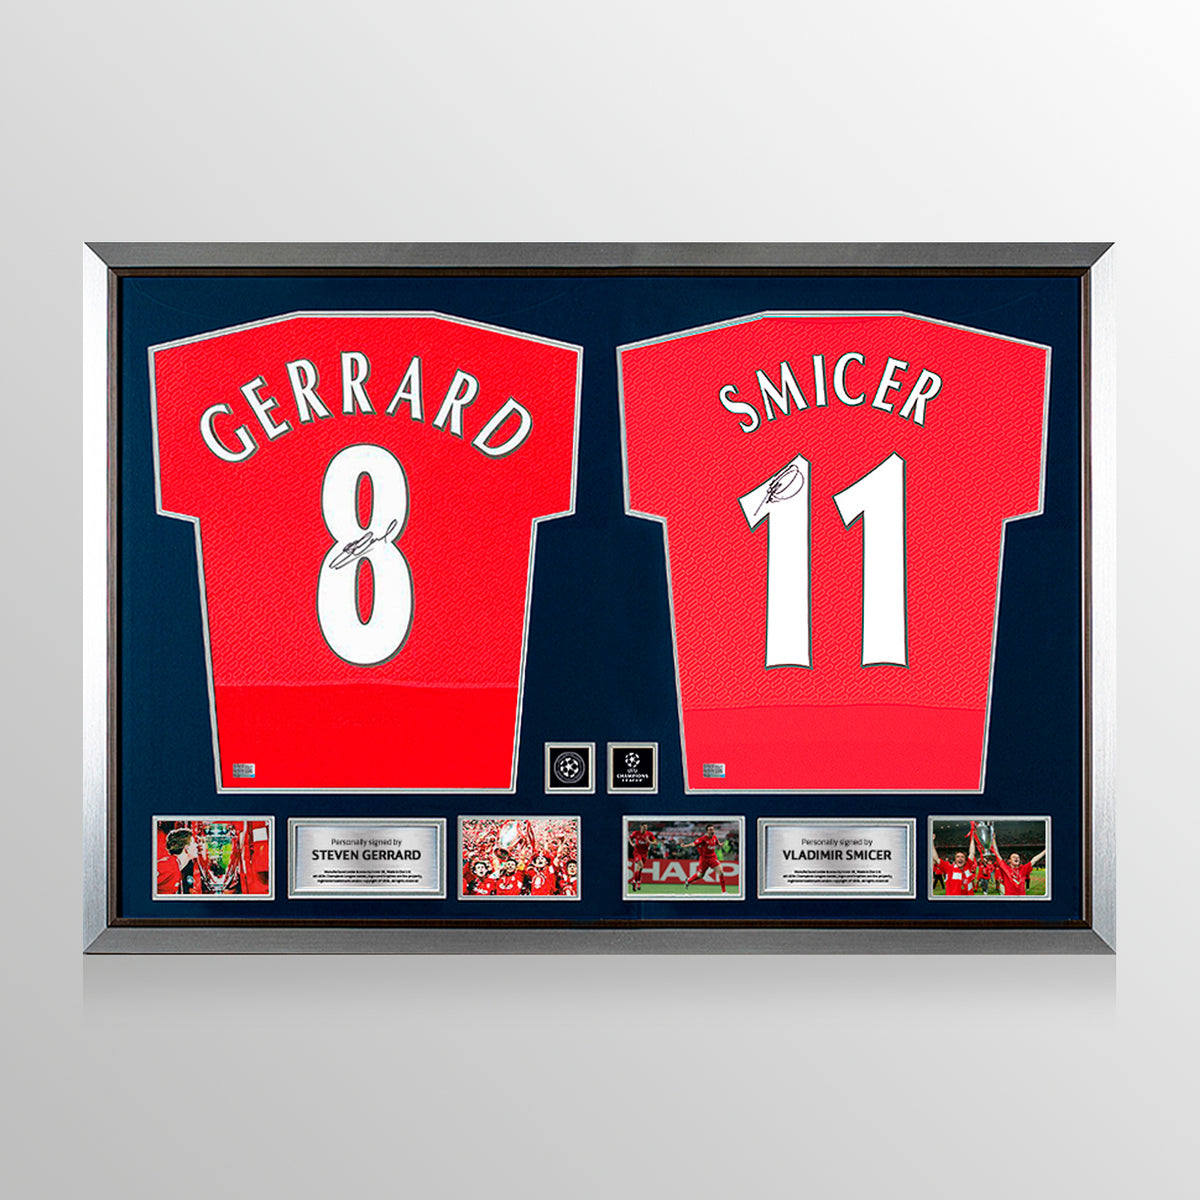 Steven Gerrard &amp; Vladimir Smicer a signé les chemises du Liverpool FC dans le double cadre de la Ligue des champions UEFA officielle